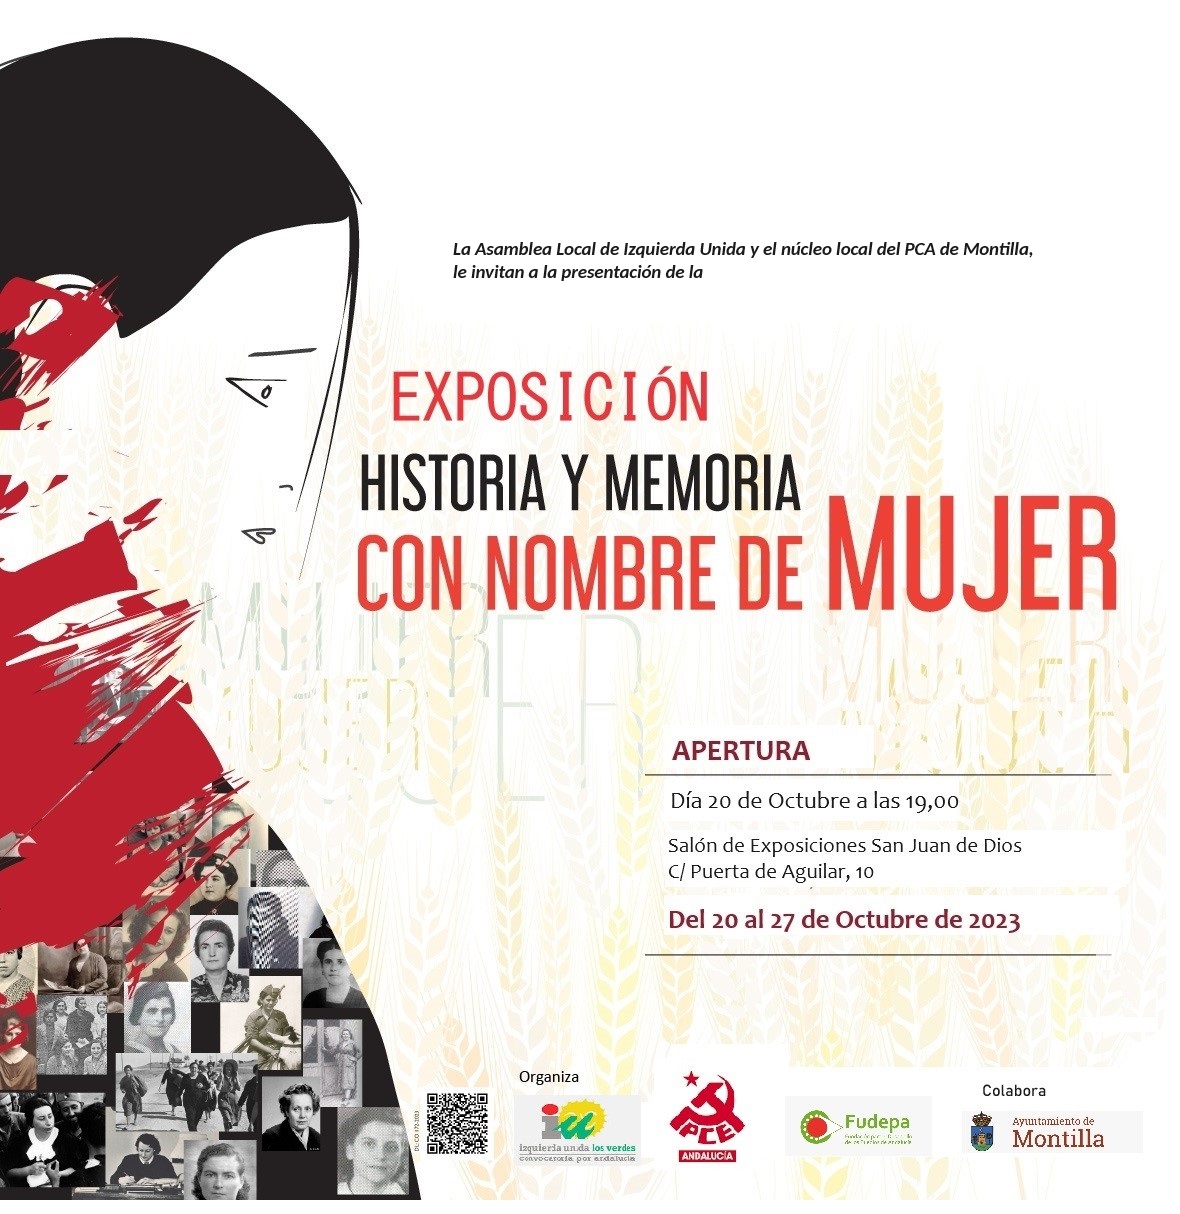 Del 20 al 27 de octubre se podrá ver la exposición ‘Historia y memoria con nombre de mujer’ en Montilla (Córdoba)